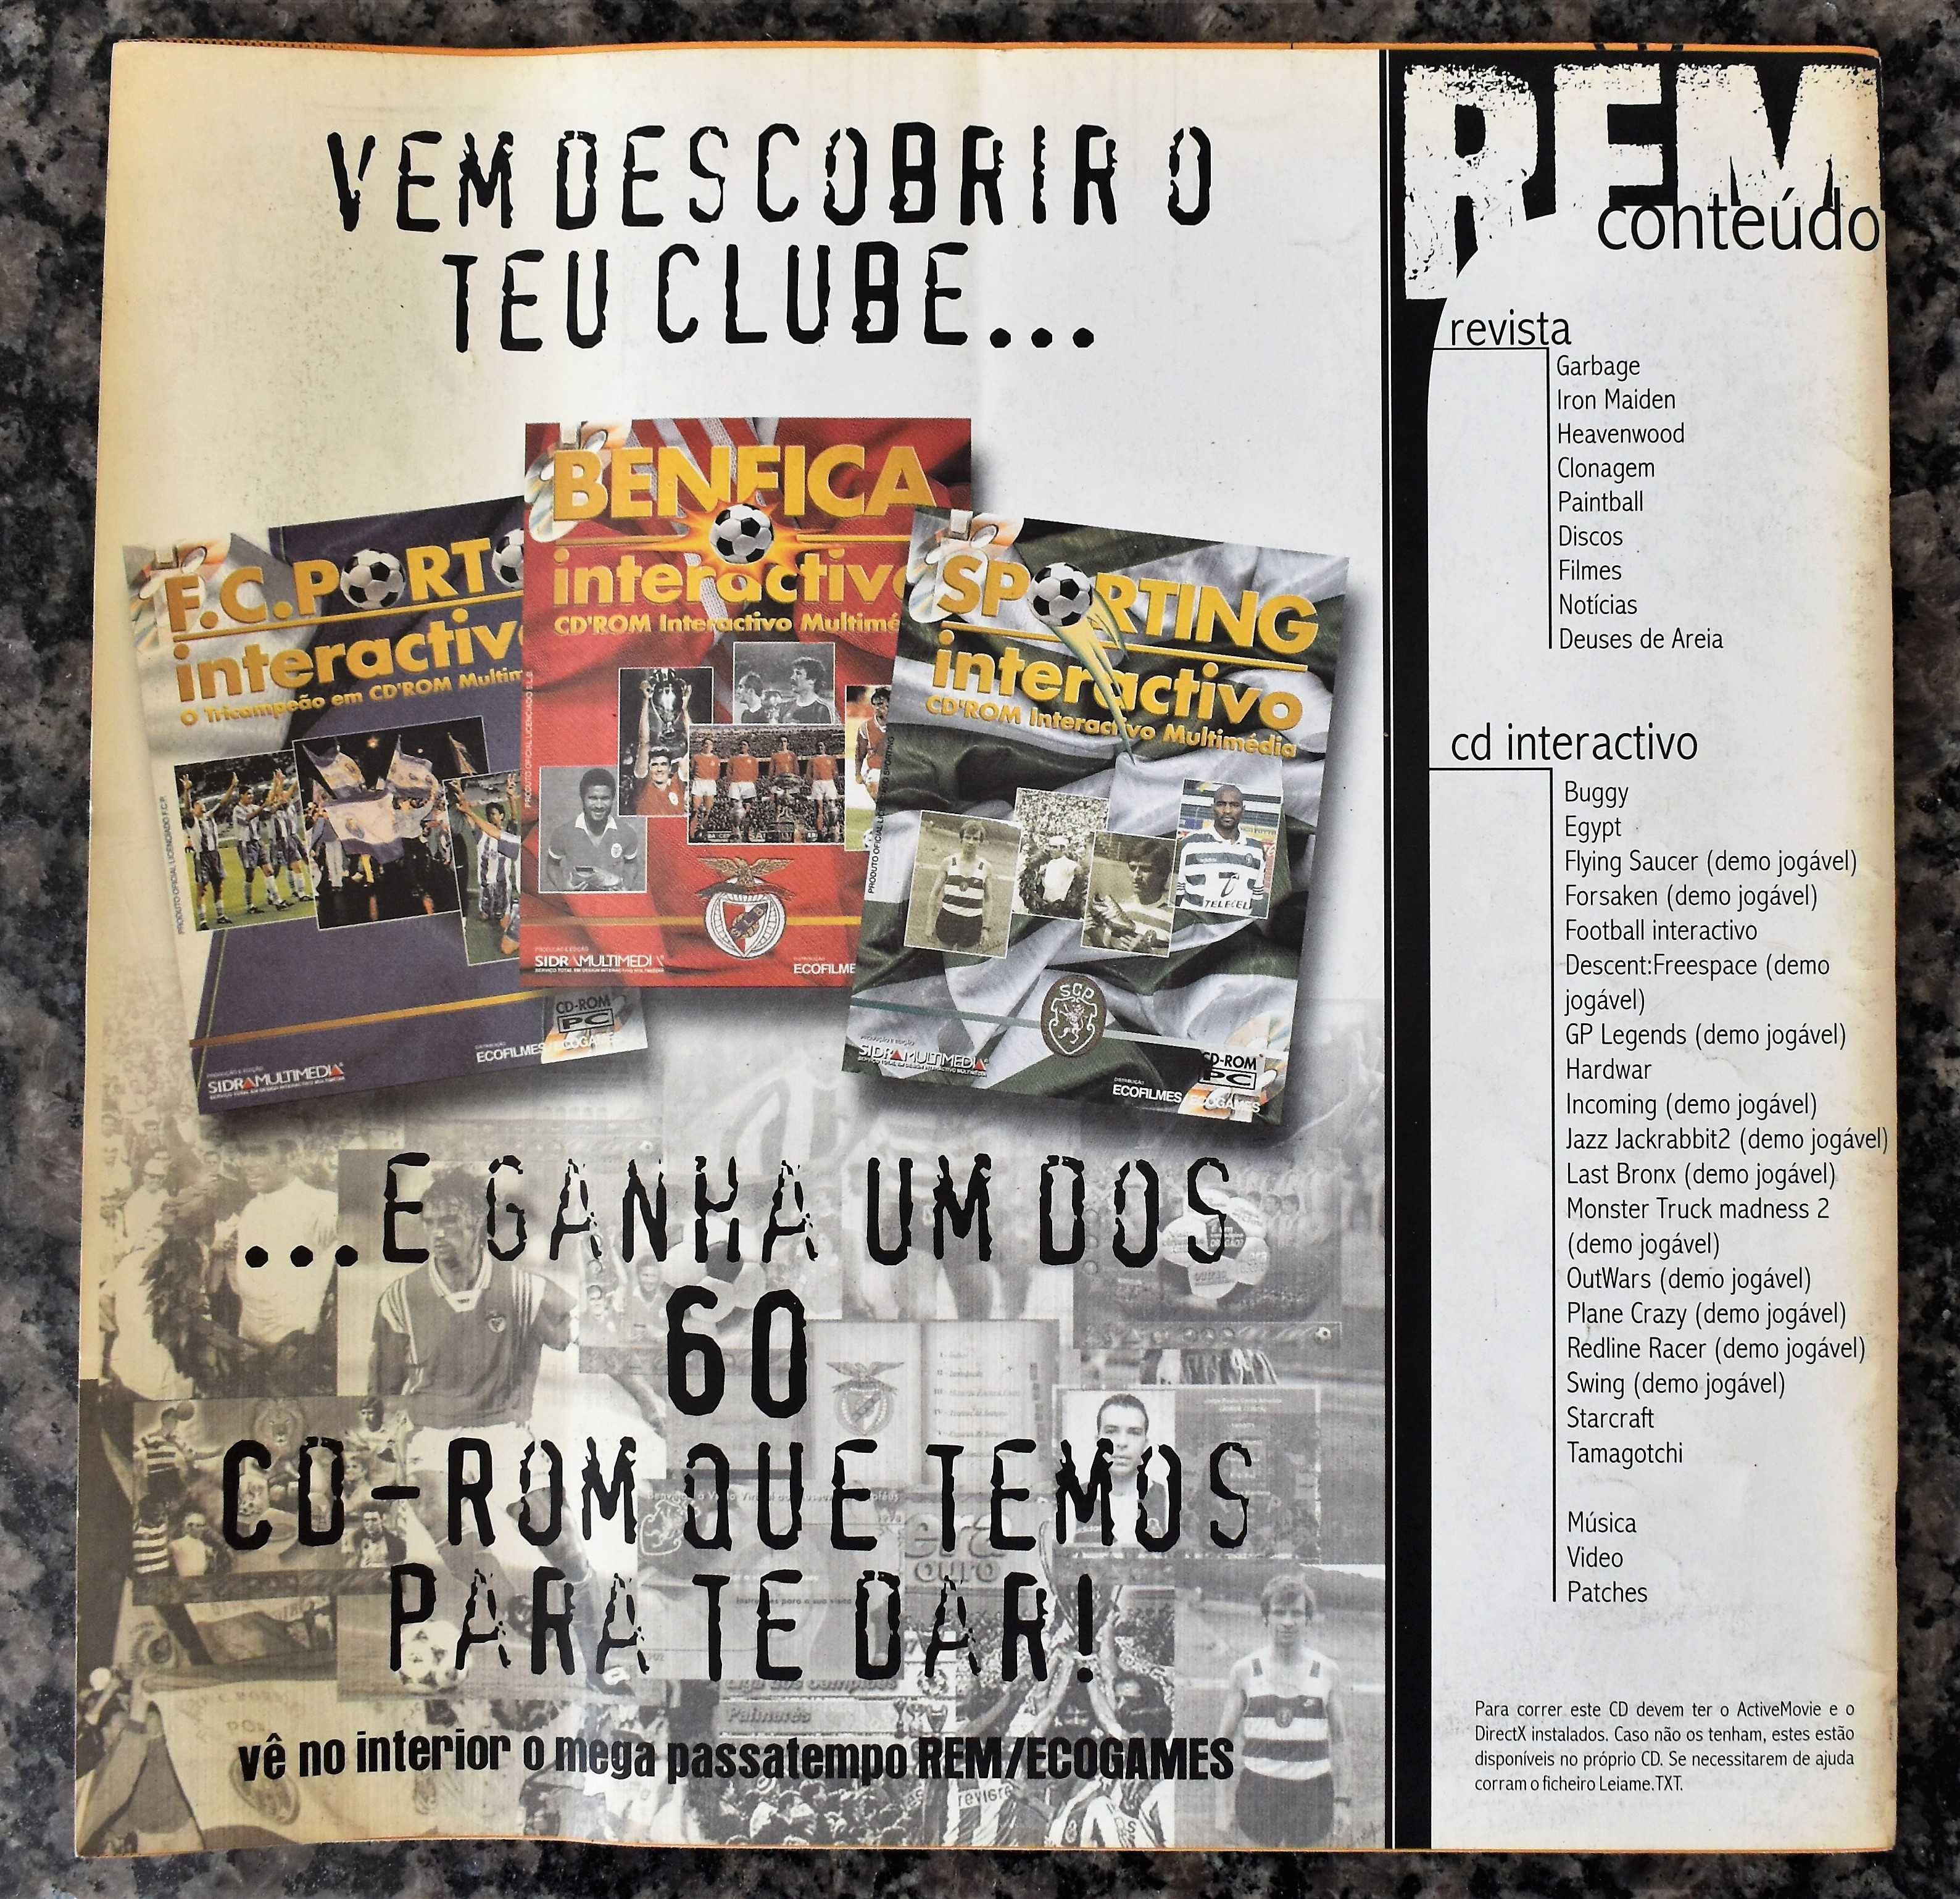 REM - Revista de Entretenimento e Multimédia (Nºs 1 e 2 + CD-ROM' s)